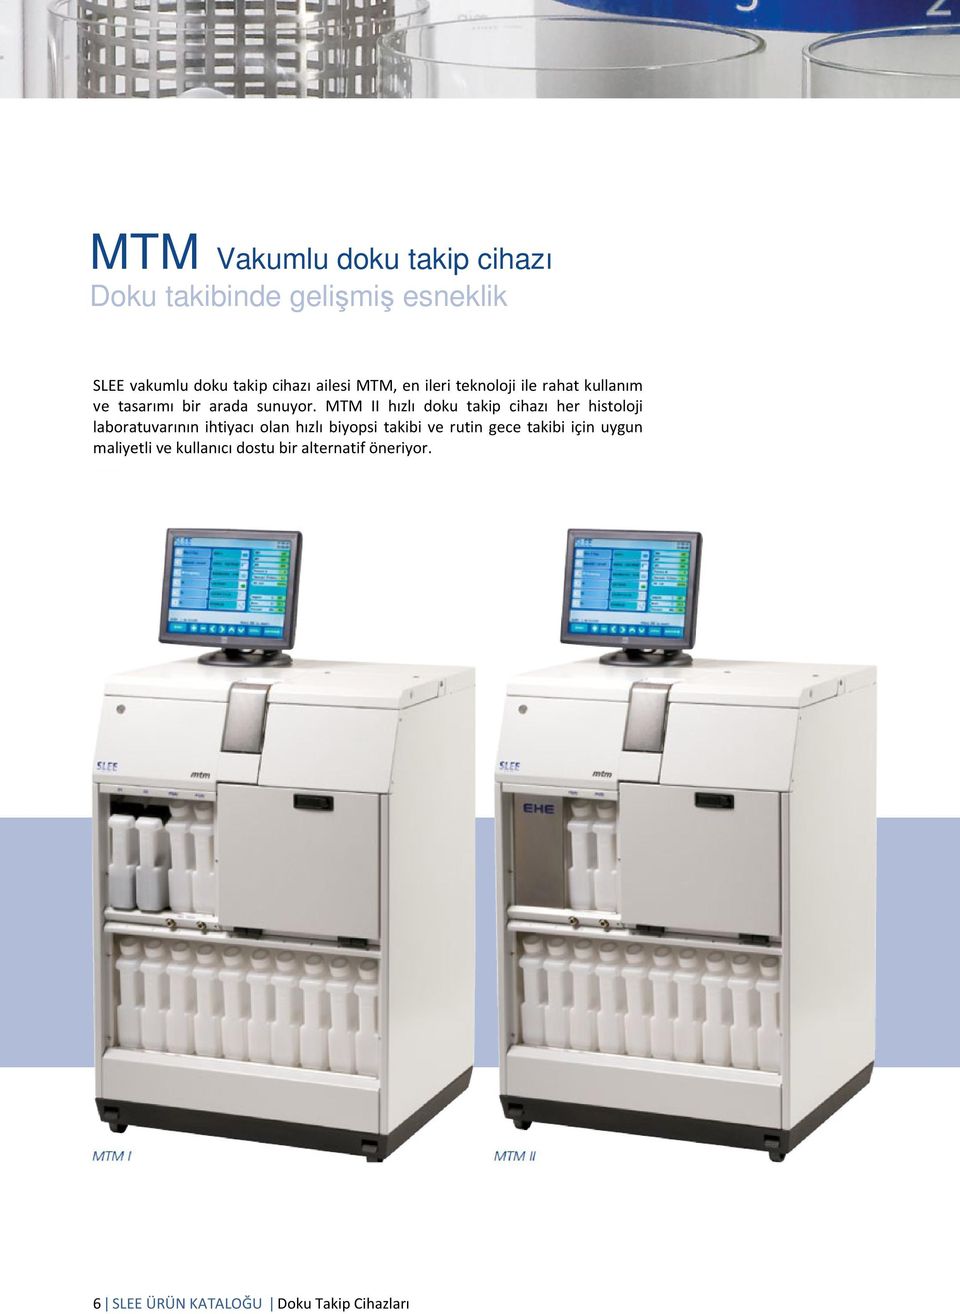 MTM II hızlı doku takip cihazı her histoloji laboratuvarının ihtiyacı olan hızlı biyopsi takibi ve